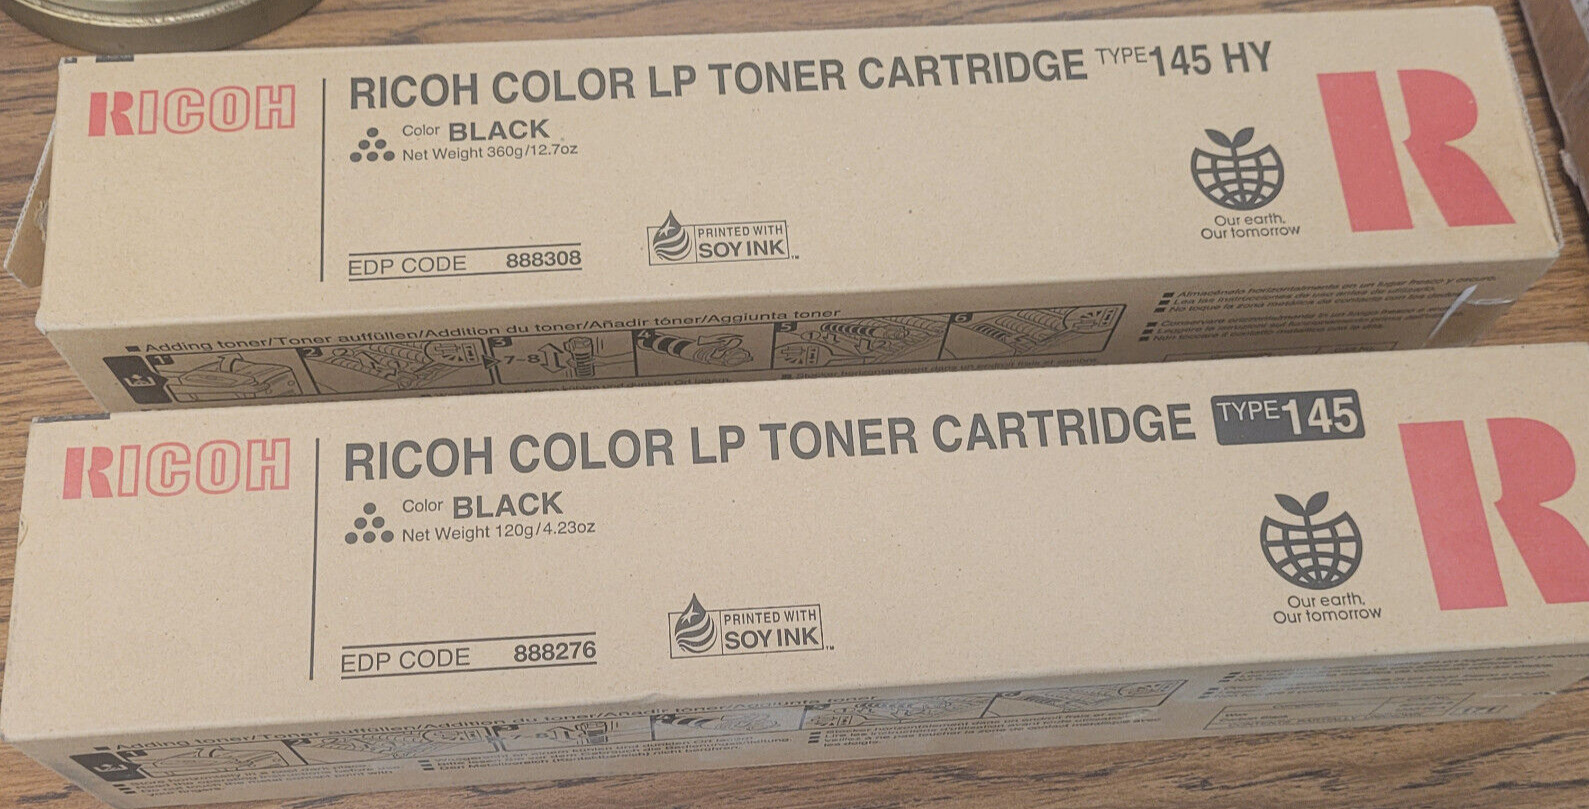 RICOH Color LP Toner Cartridge Type 145HY BLACK